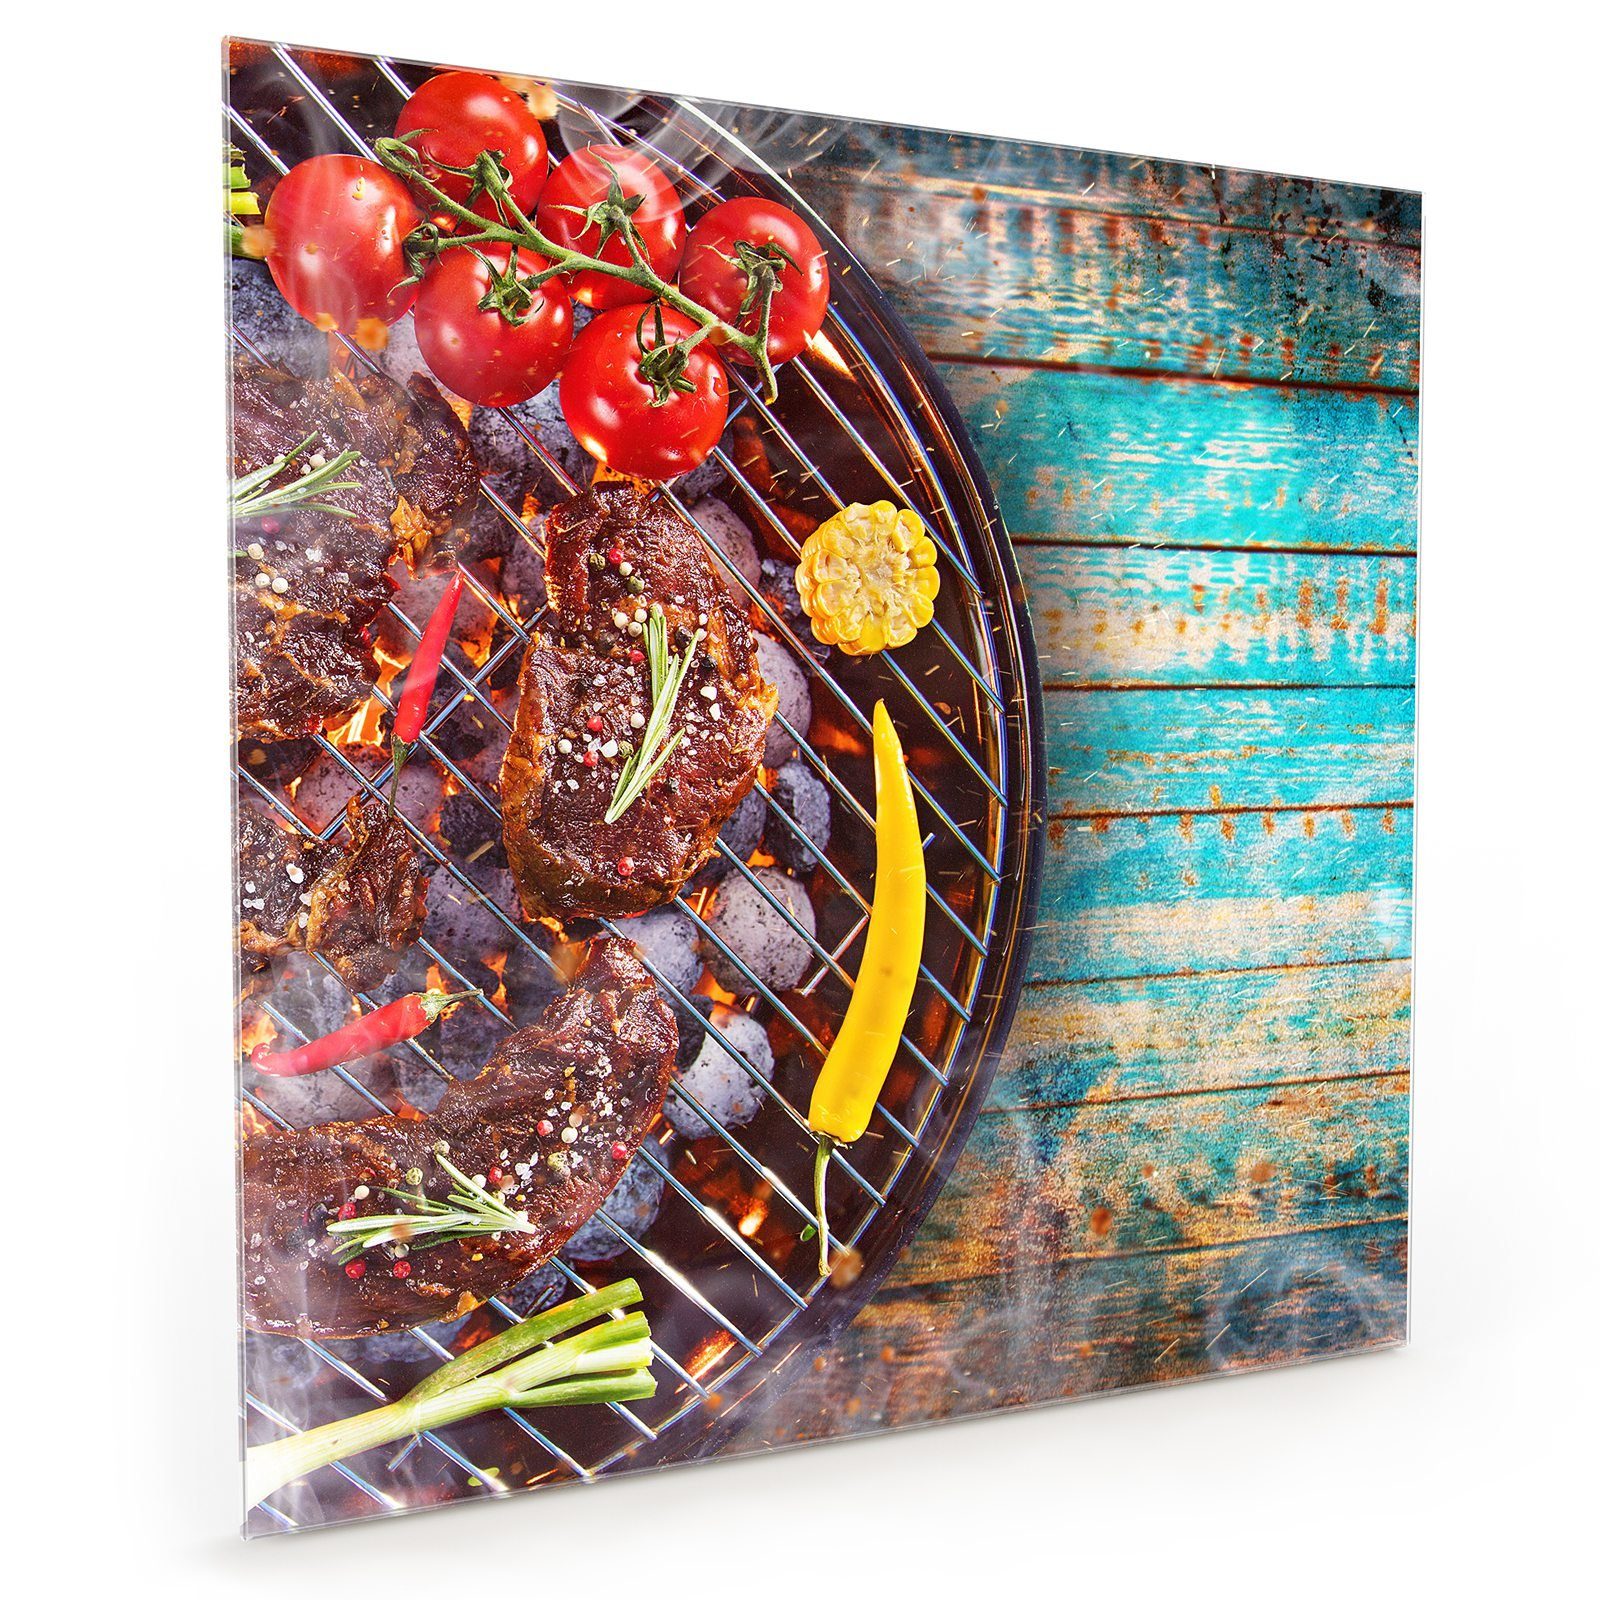 Motiv Grill Fleisch mit Spritzschutz Küchenrückwand auf Primedeco Glas Küchenrückwand